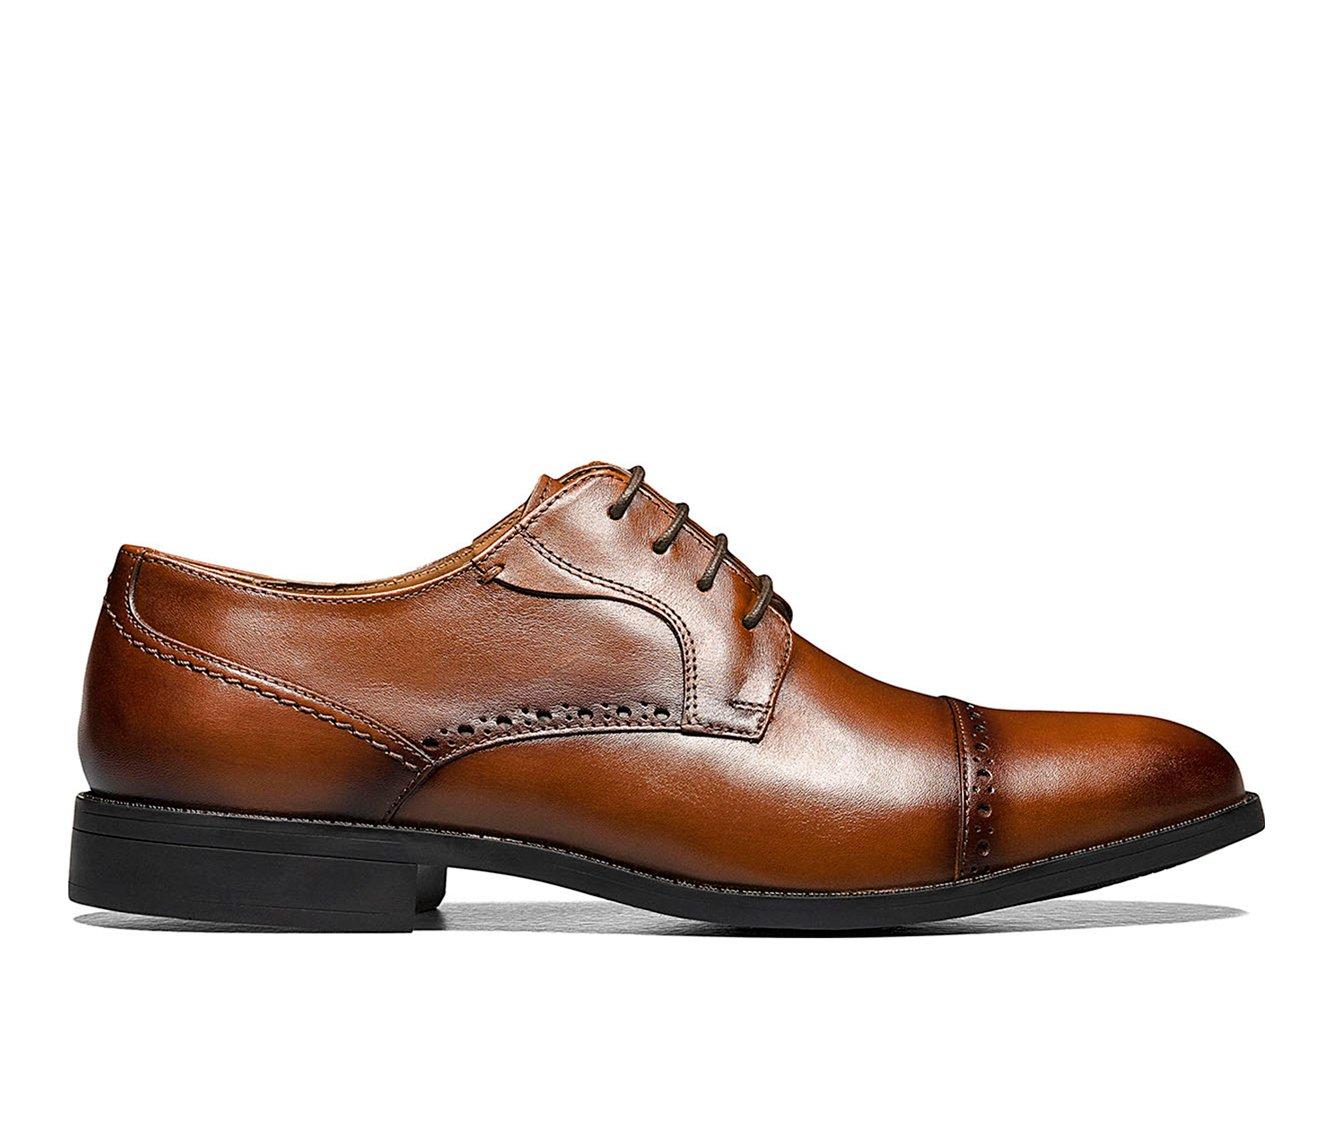 Formal Shoes For Men - Shop Latest 2022 Men's Formal Shoes Online